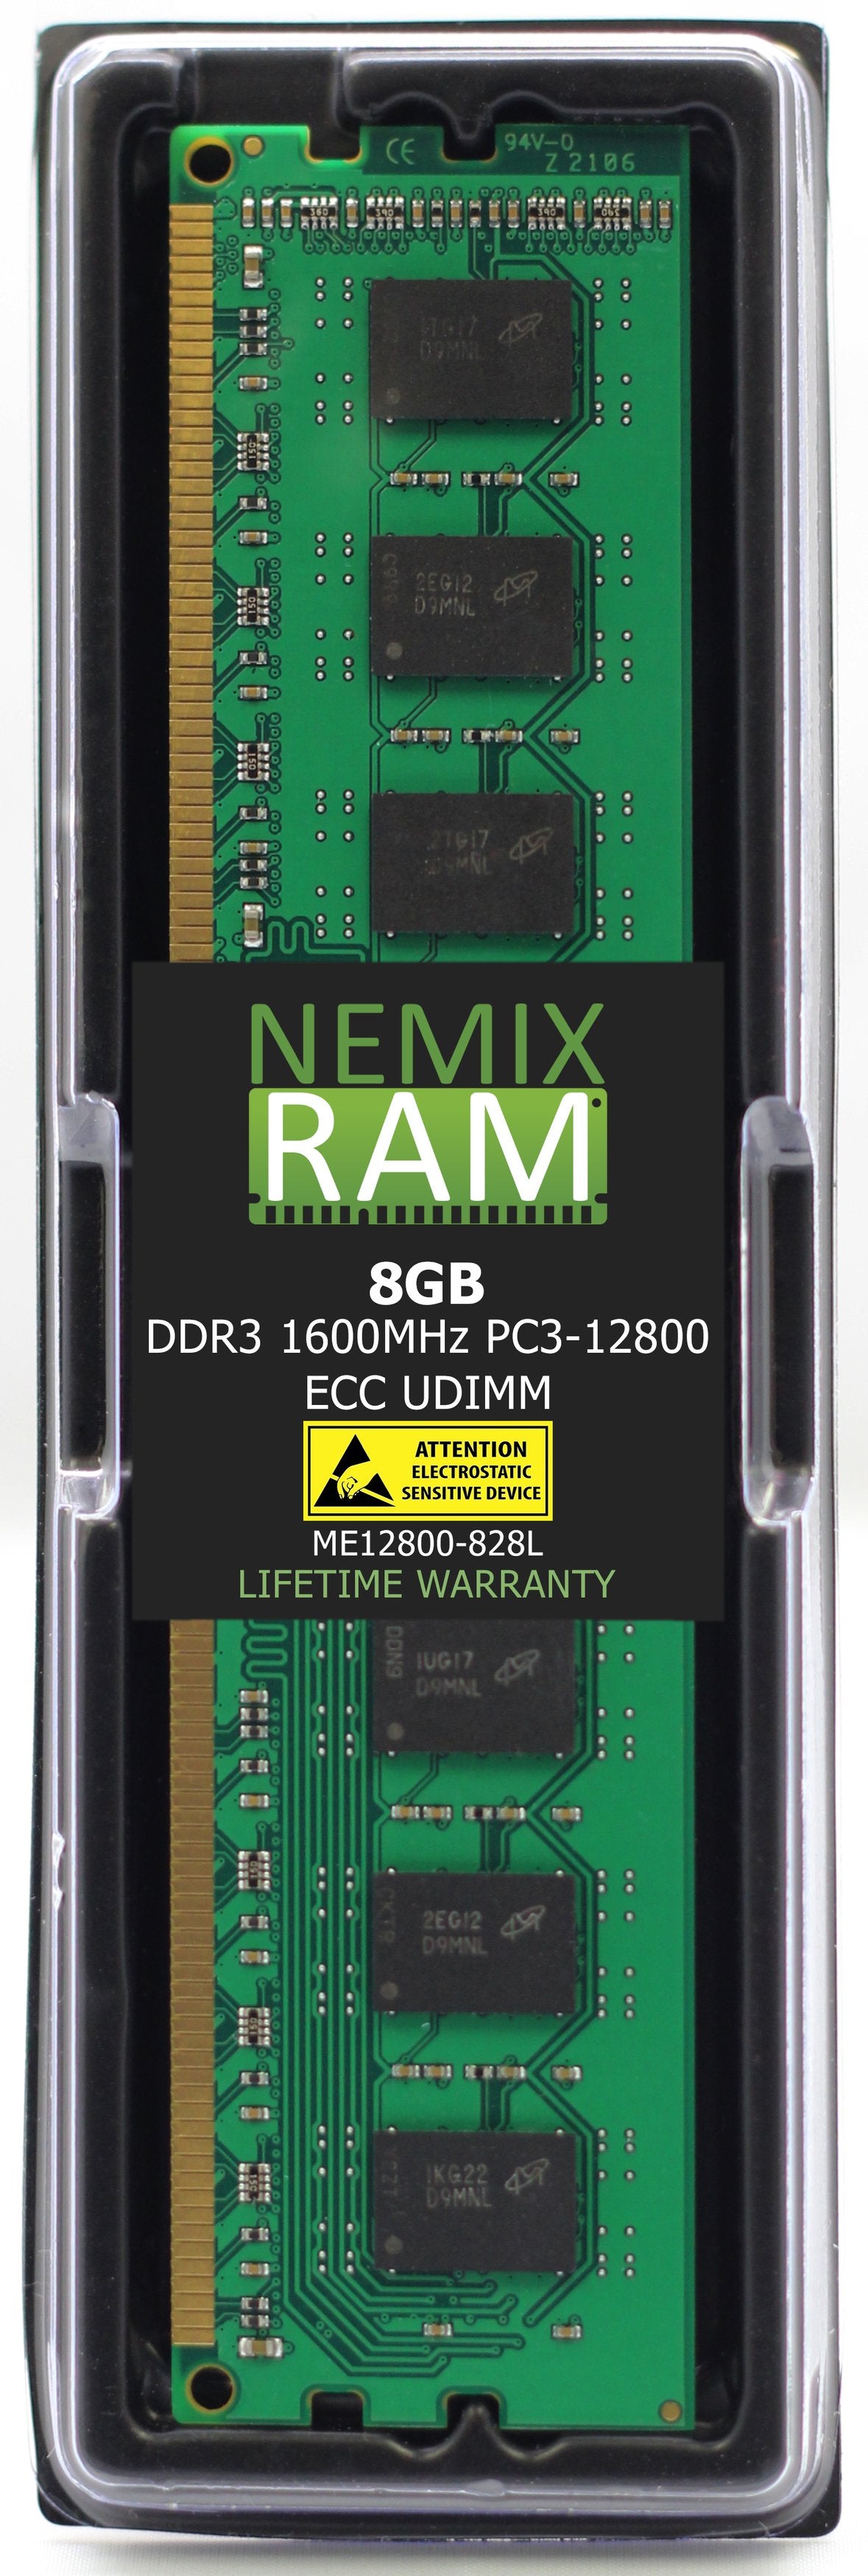 8GB DDR3 1600MHZ PC3-12800 ECC UDIMM Compatible with Supermicro MEM-DR380L-HL03-EU16